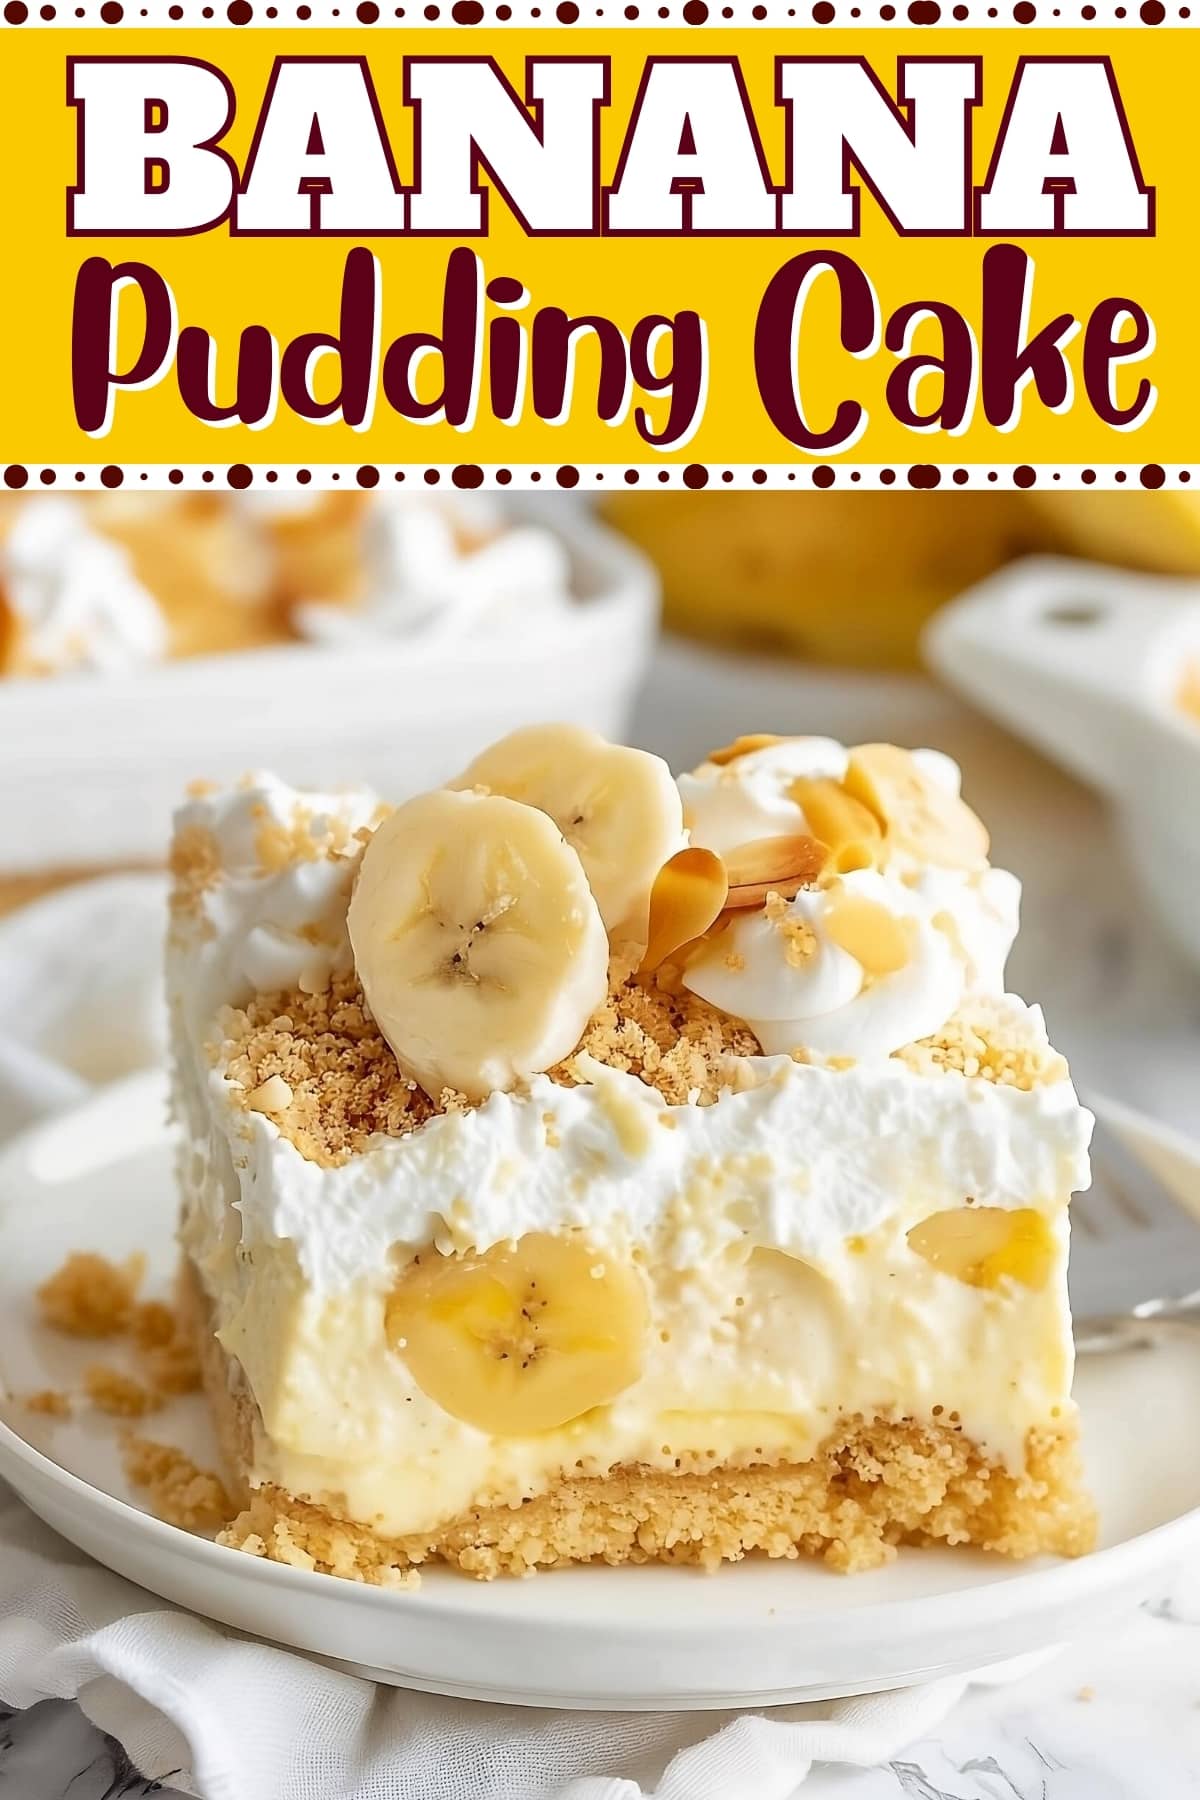 Banana pudding cake.